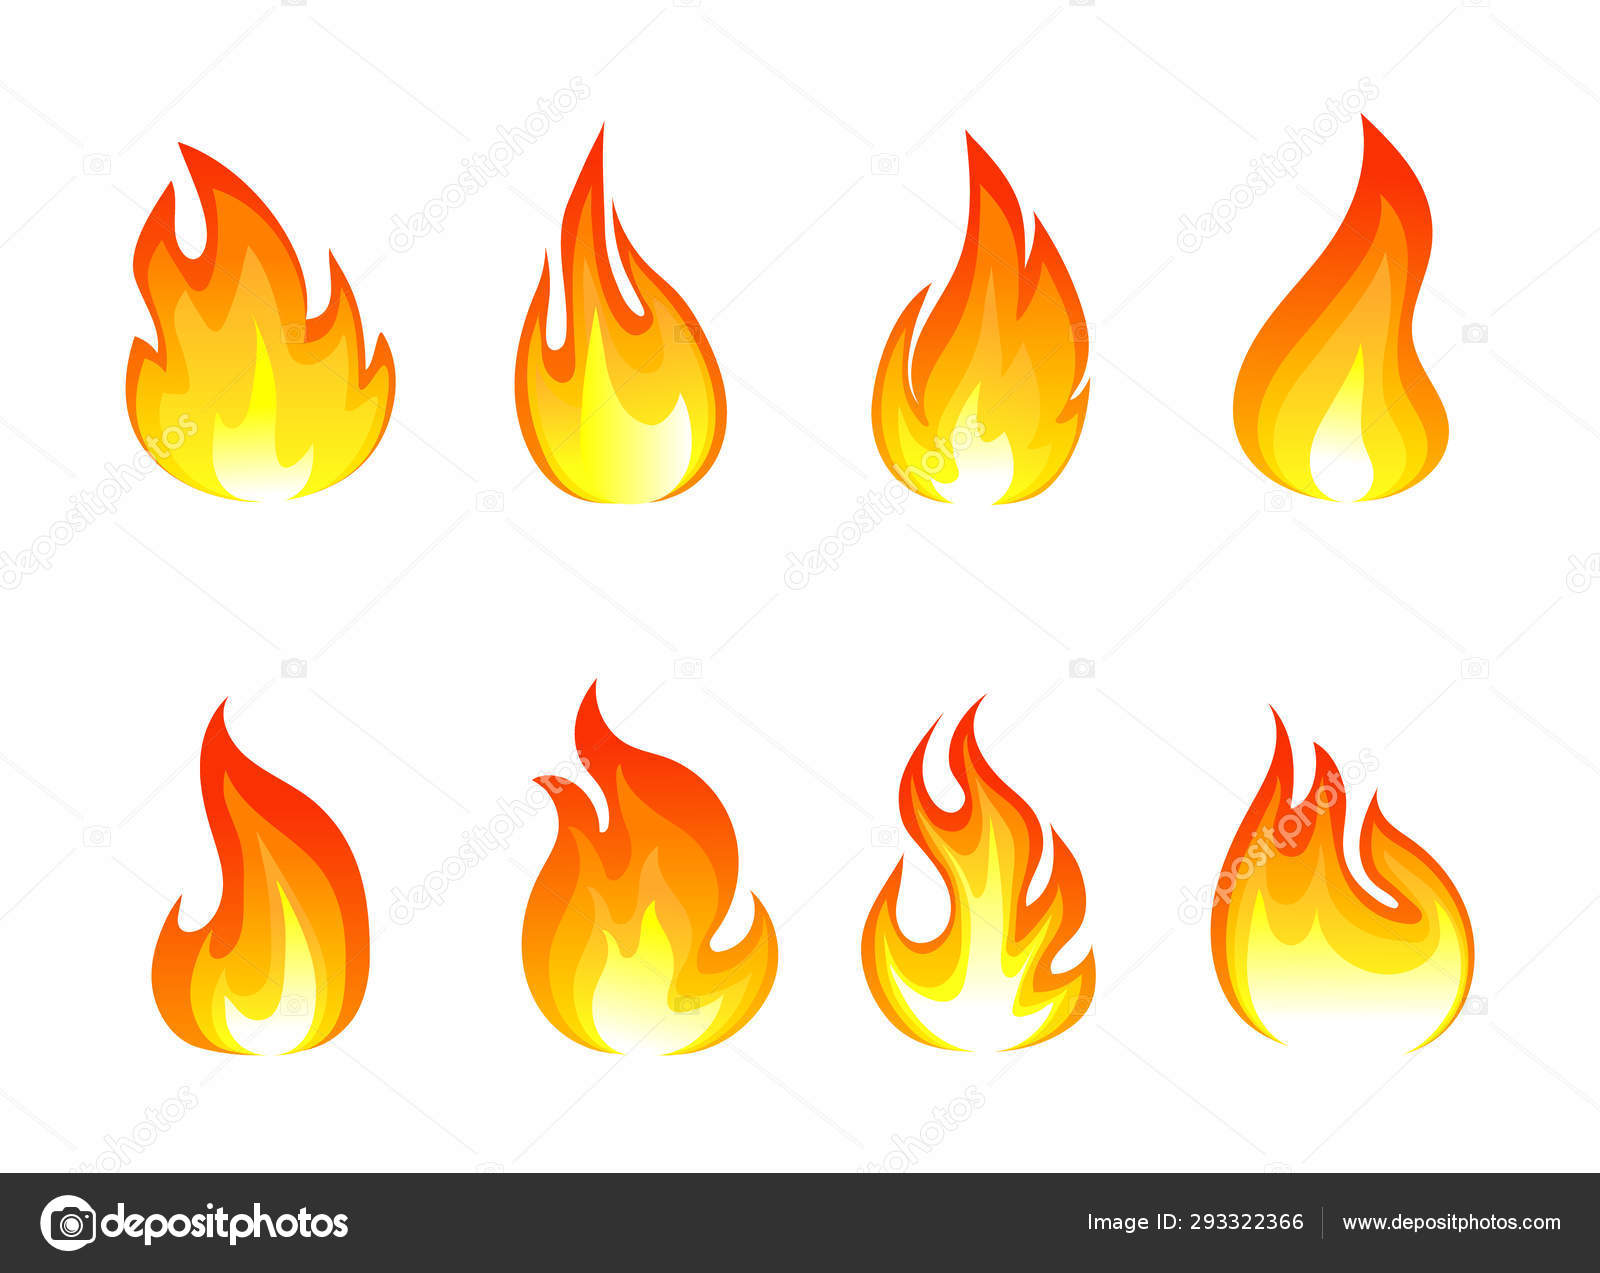 Ilustração em vetor de fogo e sinal vermelho. conjunto de fogo e fogueira